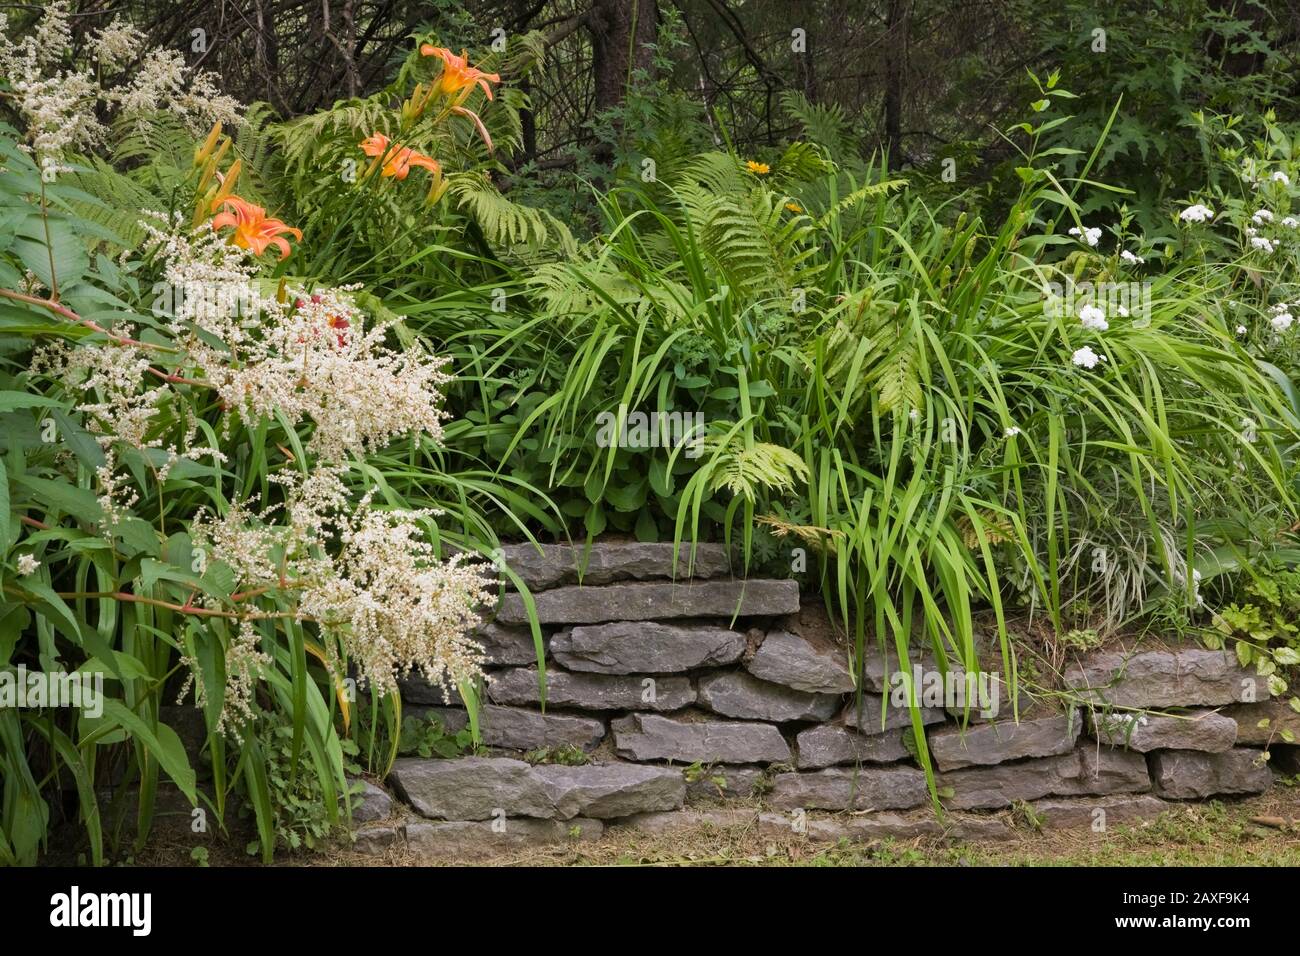 White Persicaria polimorfa - fiori di Fleece gigante e bordo di pietra grigia rialzata con hemerocallis arancione - fiori di ninfea e Pteridofita - Ferns. Foto Stock